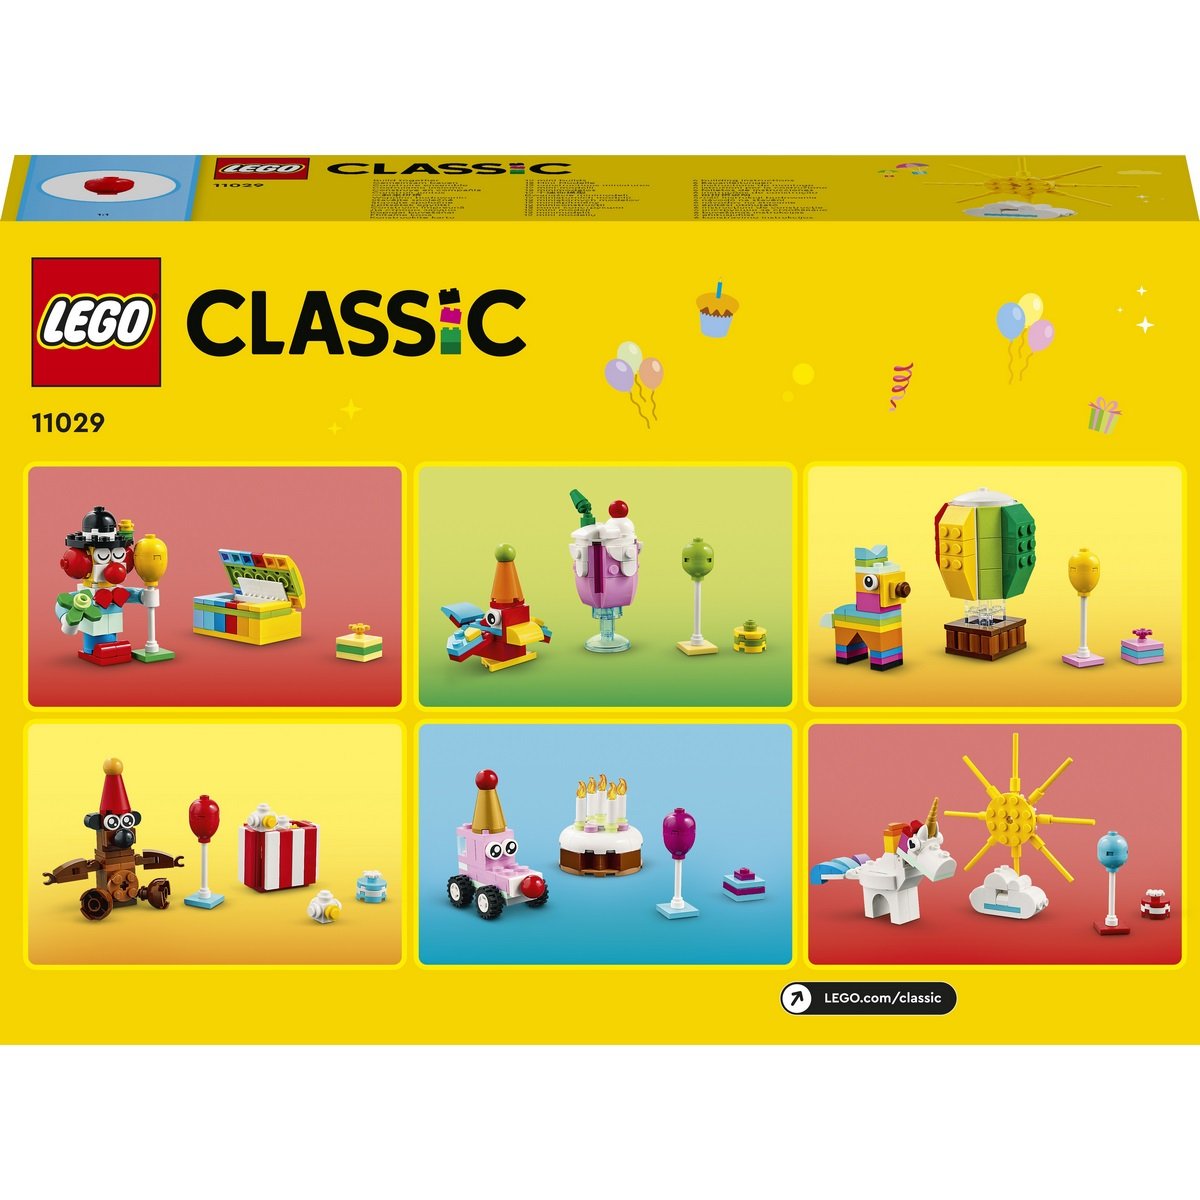 Classic - Boîte de fête créative (11029) LEGO